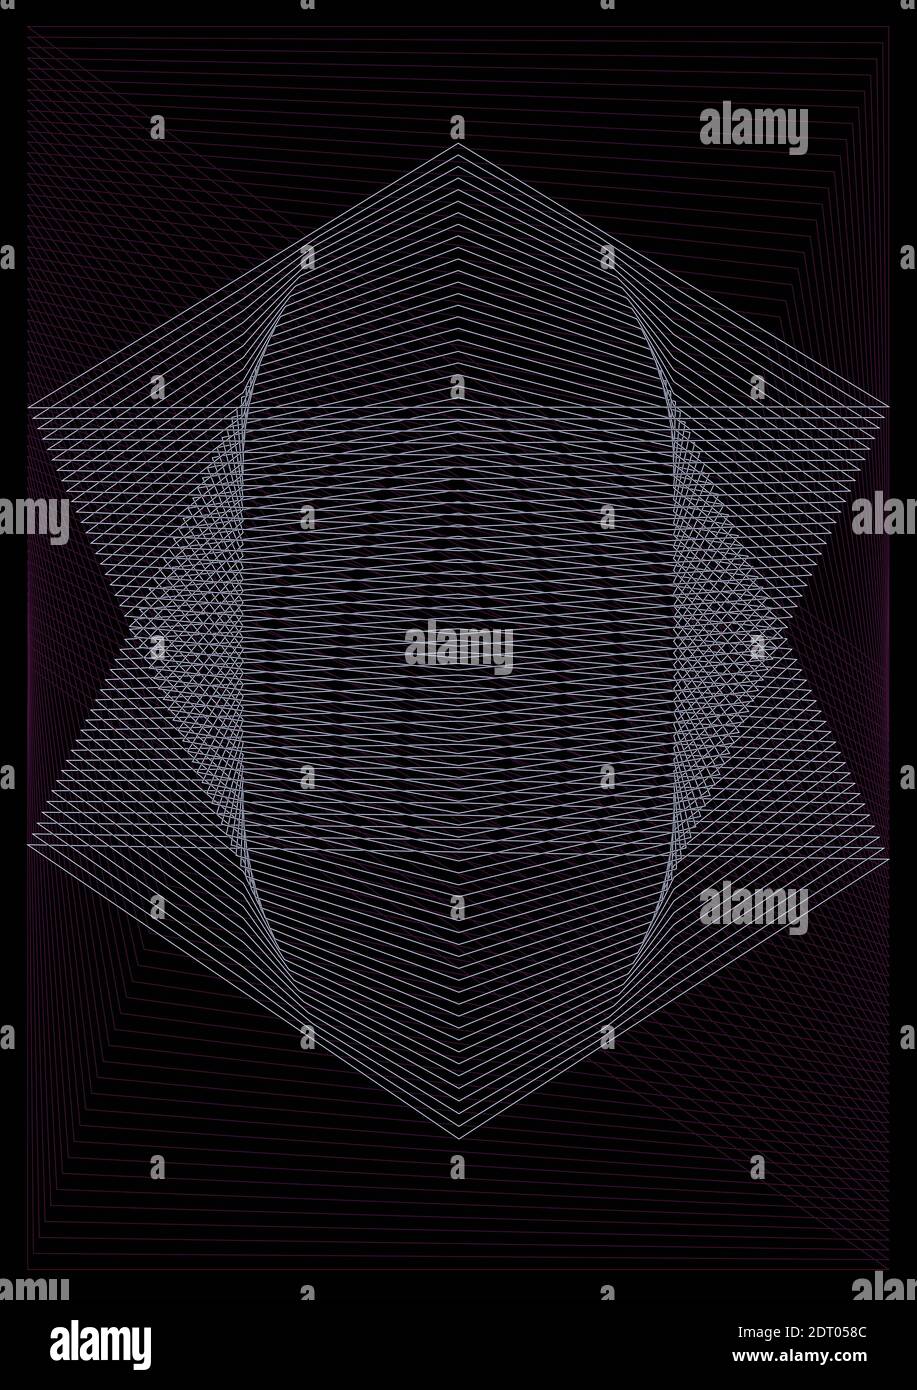 Vektor abstraktes Muster, geometrische Formen von Flieder und lila Schnittlinien auf einem schwarzen Hintergrund Stock Vektor